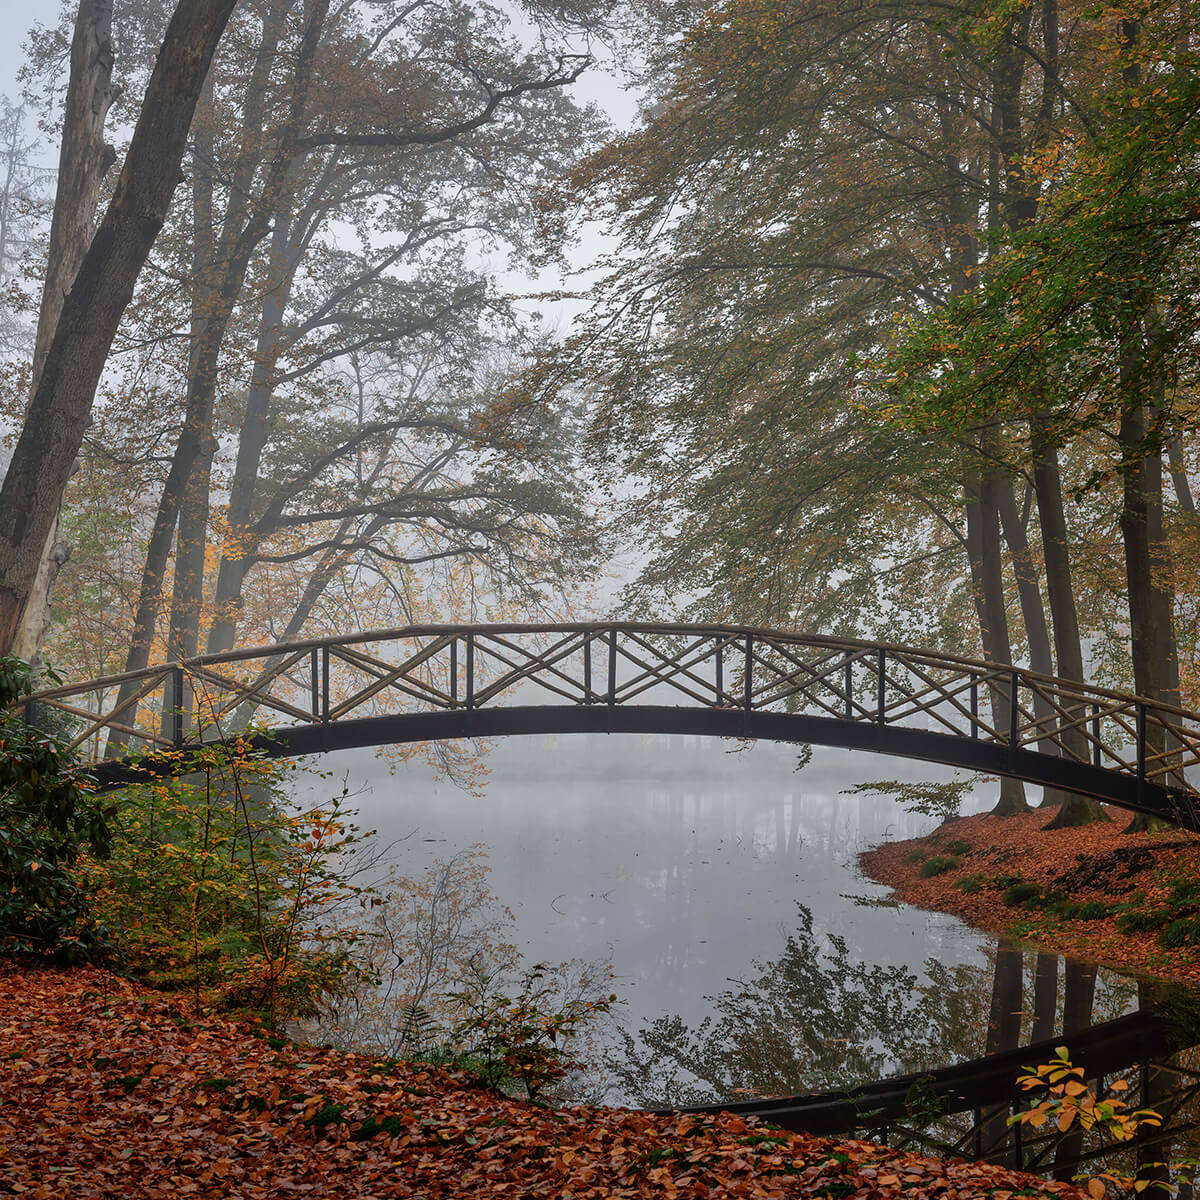 Bridge between the trees